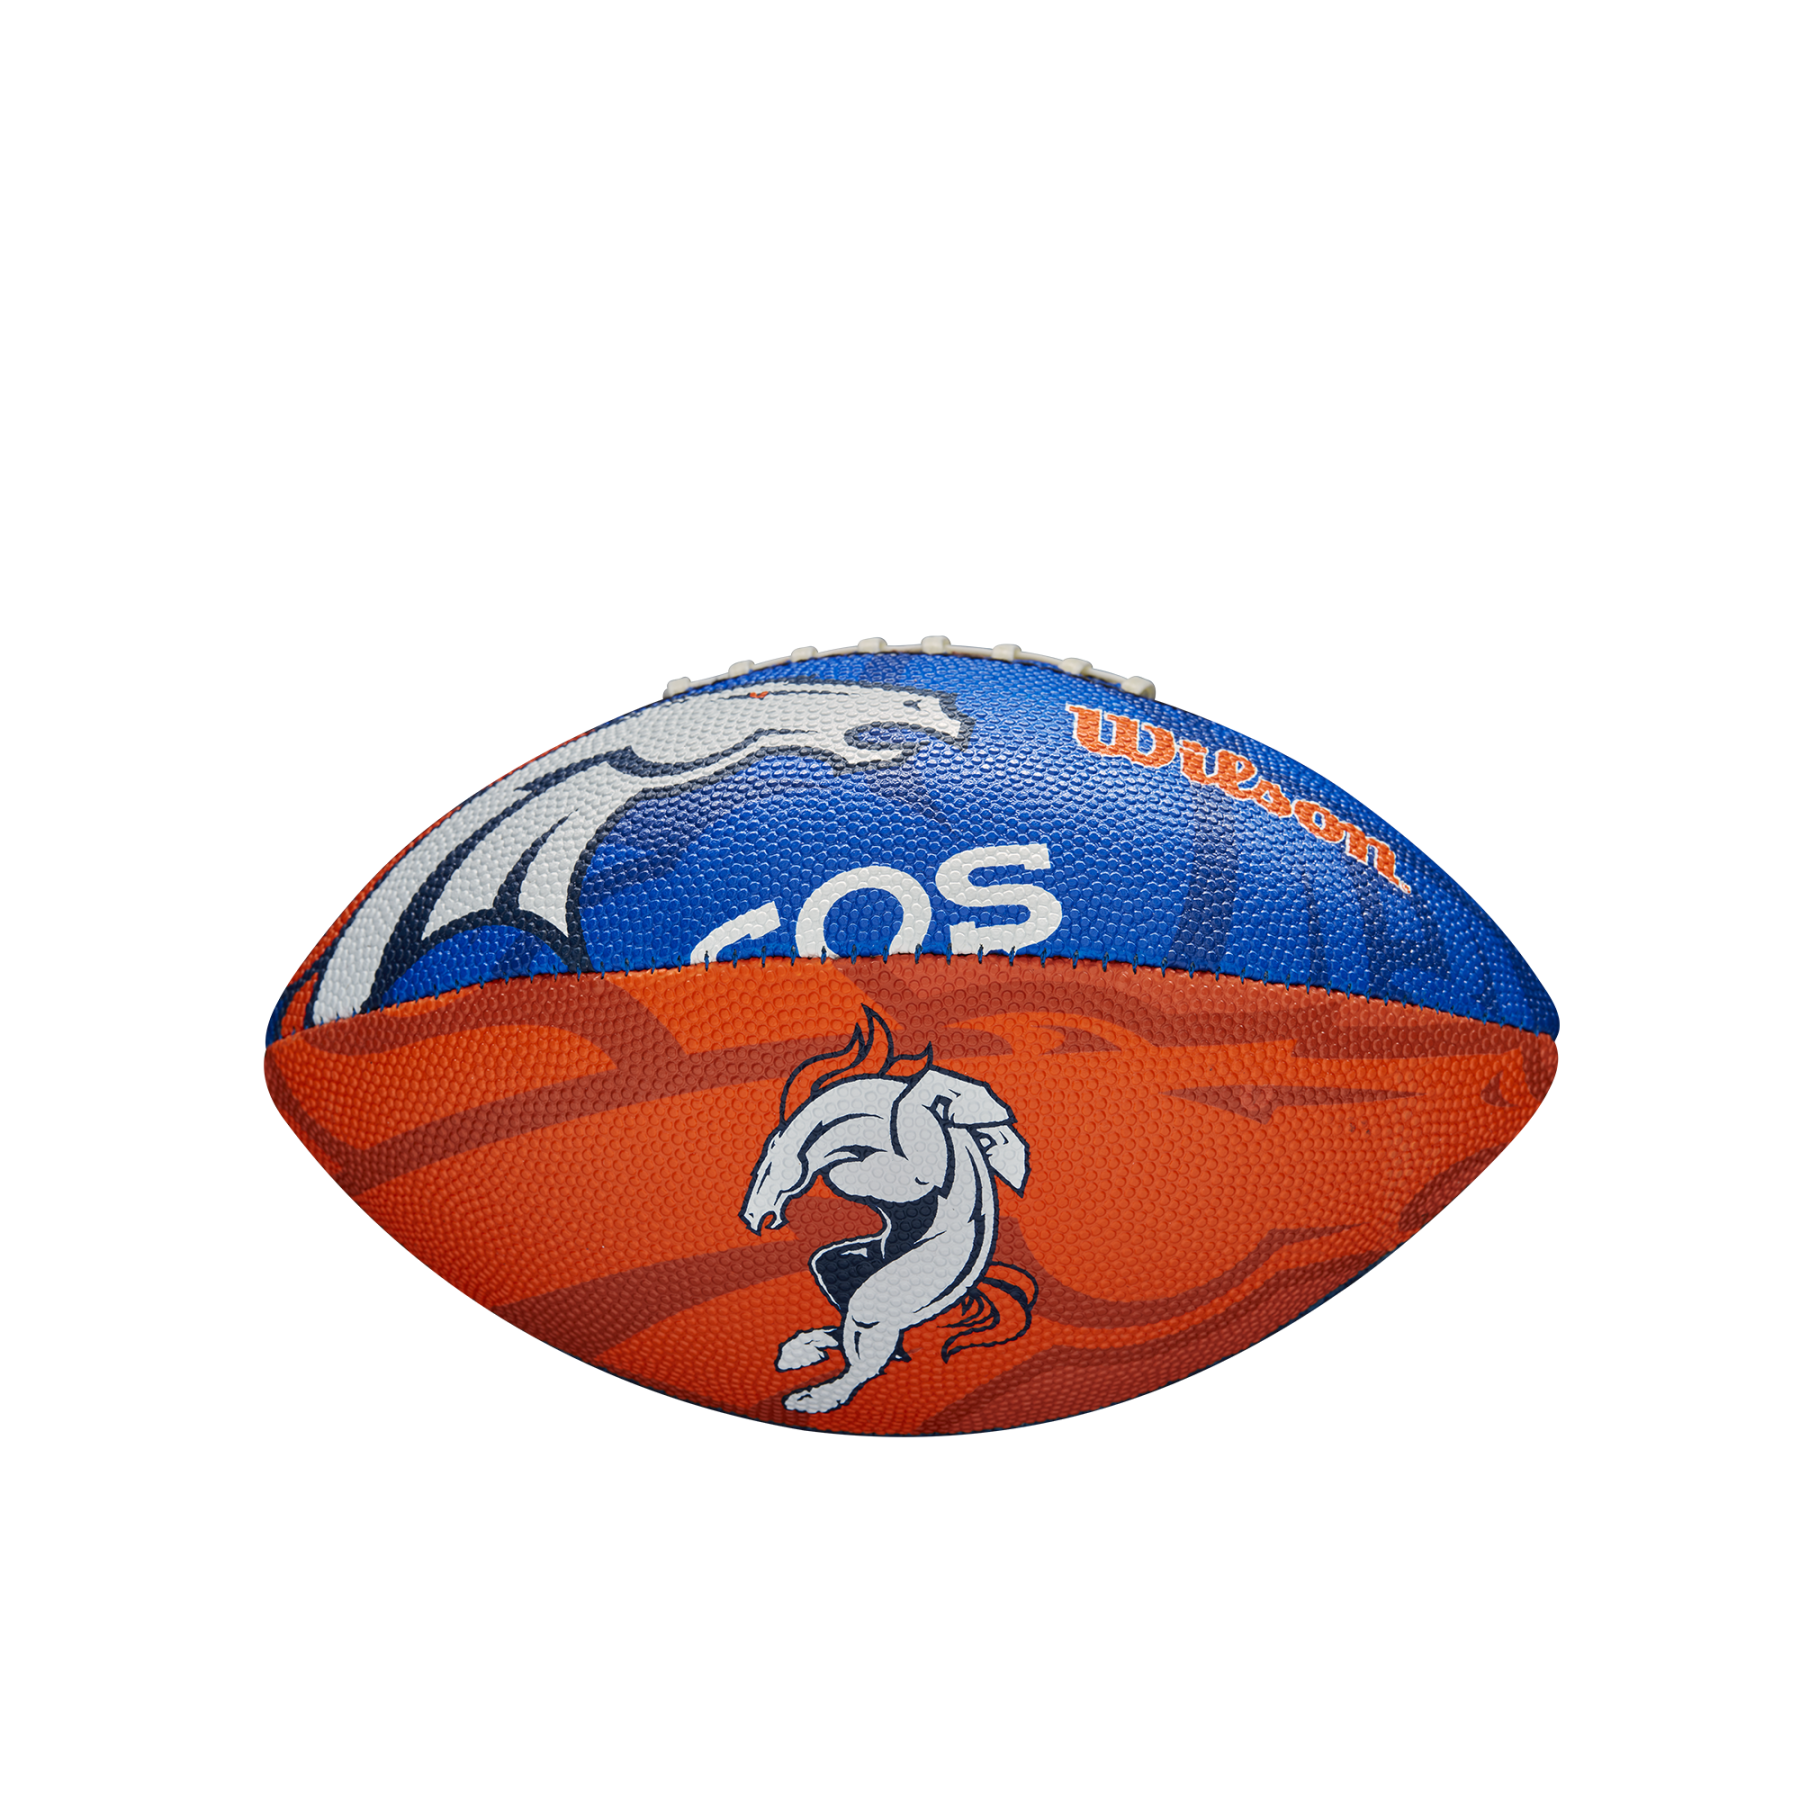 Children's ball Wilson Broncos NFL Logo